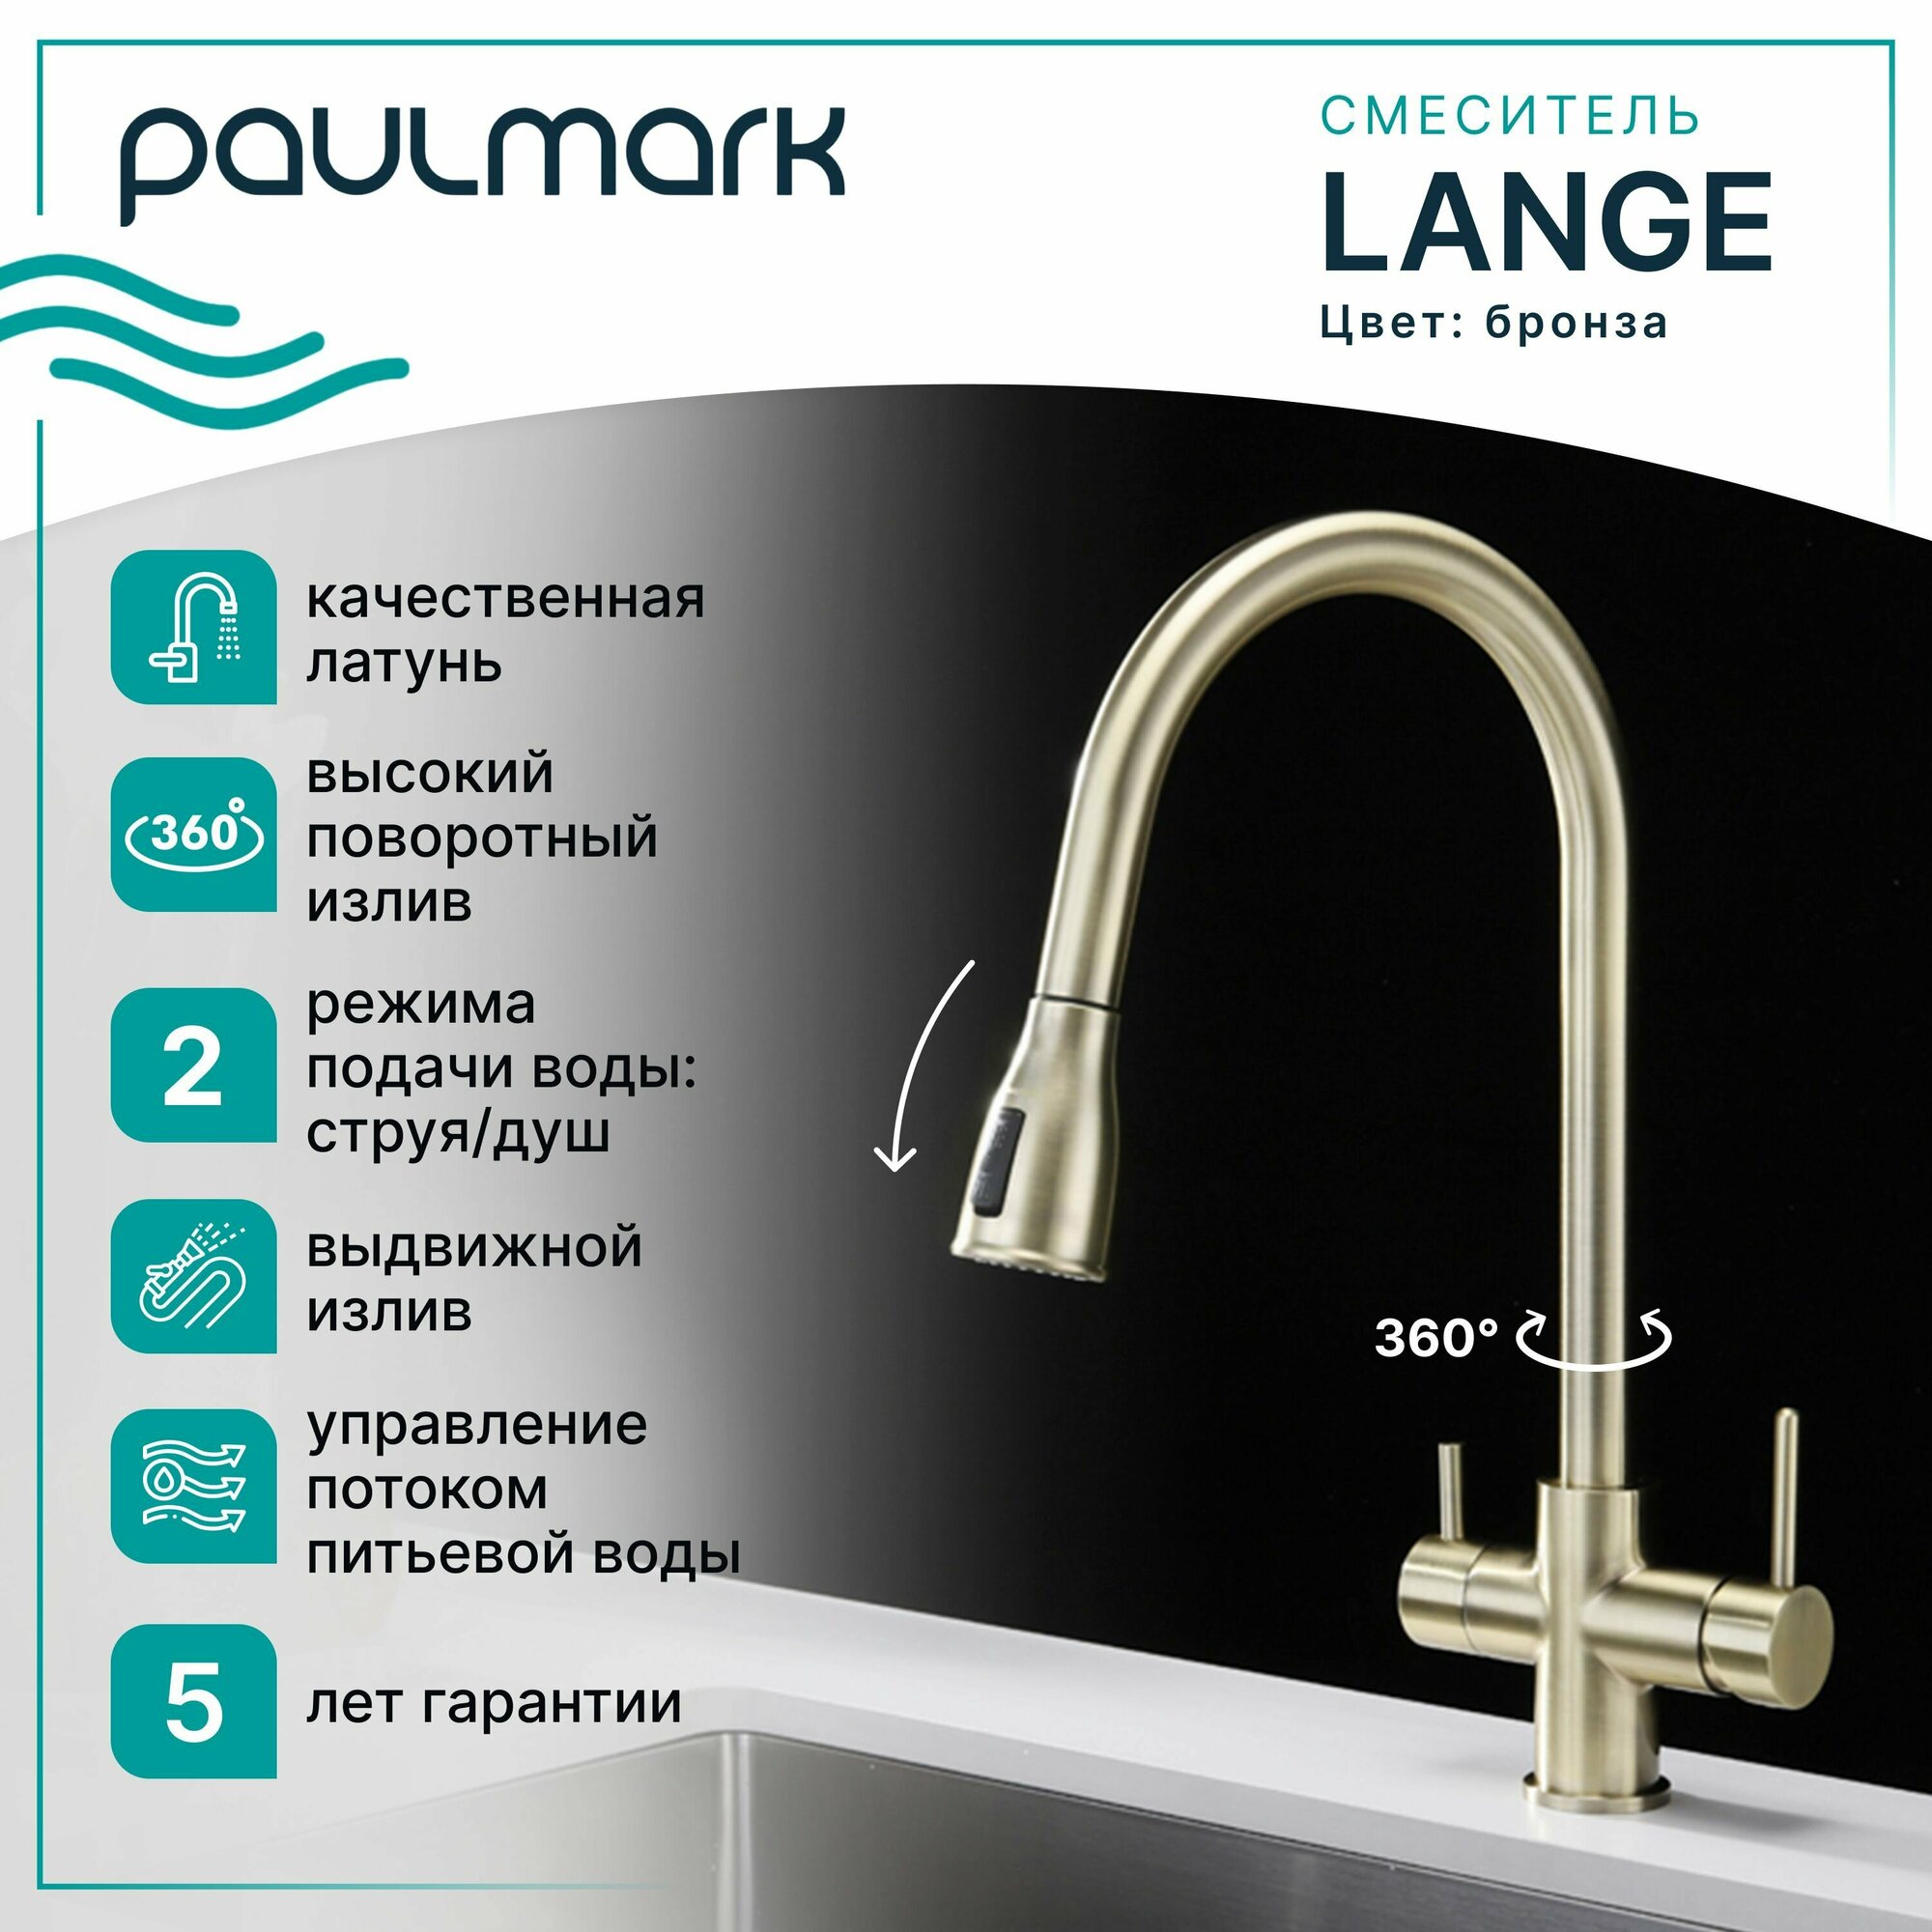 Смеситель для кухни с гибким выдвижным изливом Paulmark LANGE, подключение к системе фильтрации воды (отдельный канал), режимы струя / душ, латунь, на мойку / столешницу, бронза, La214212-BR